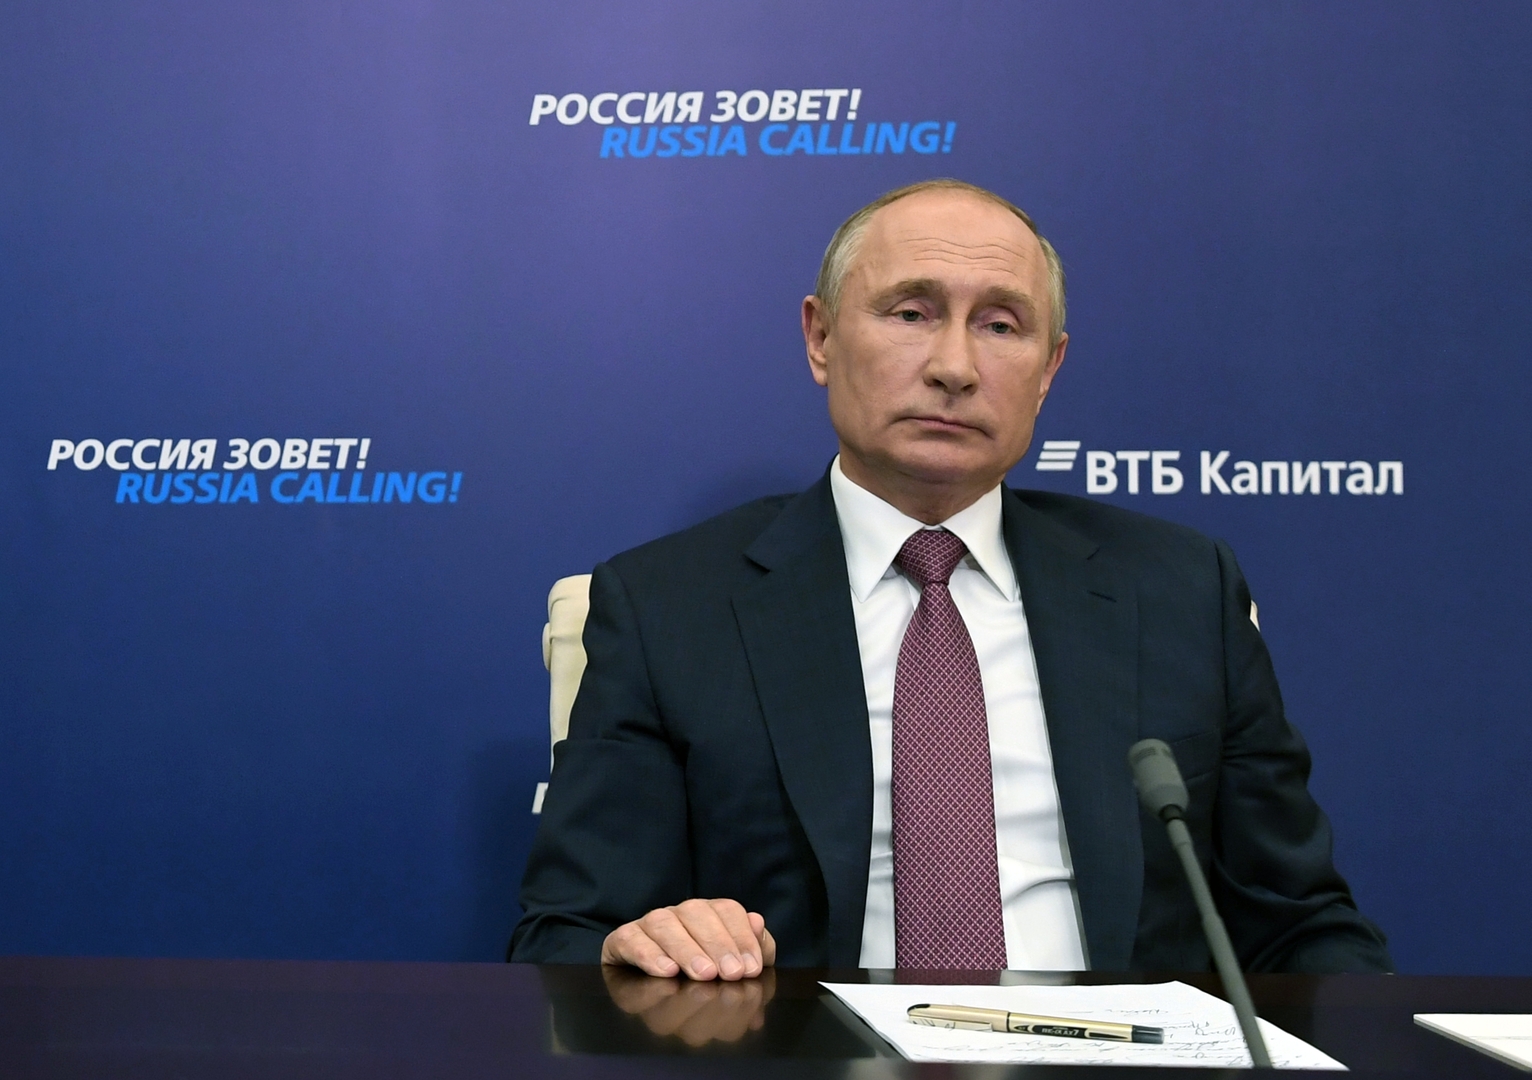 بوتين يعلن عن رؤية موسكو لتسوية النزاع في قره باغ